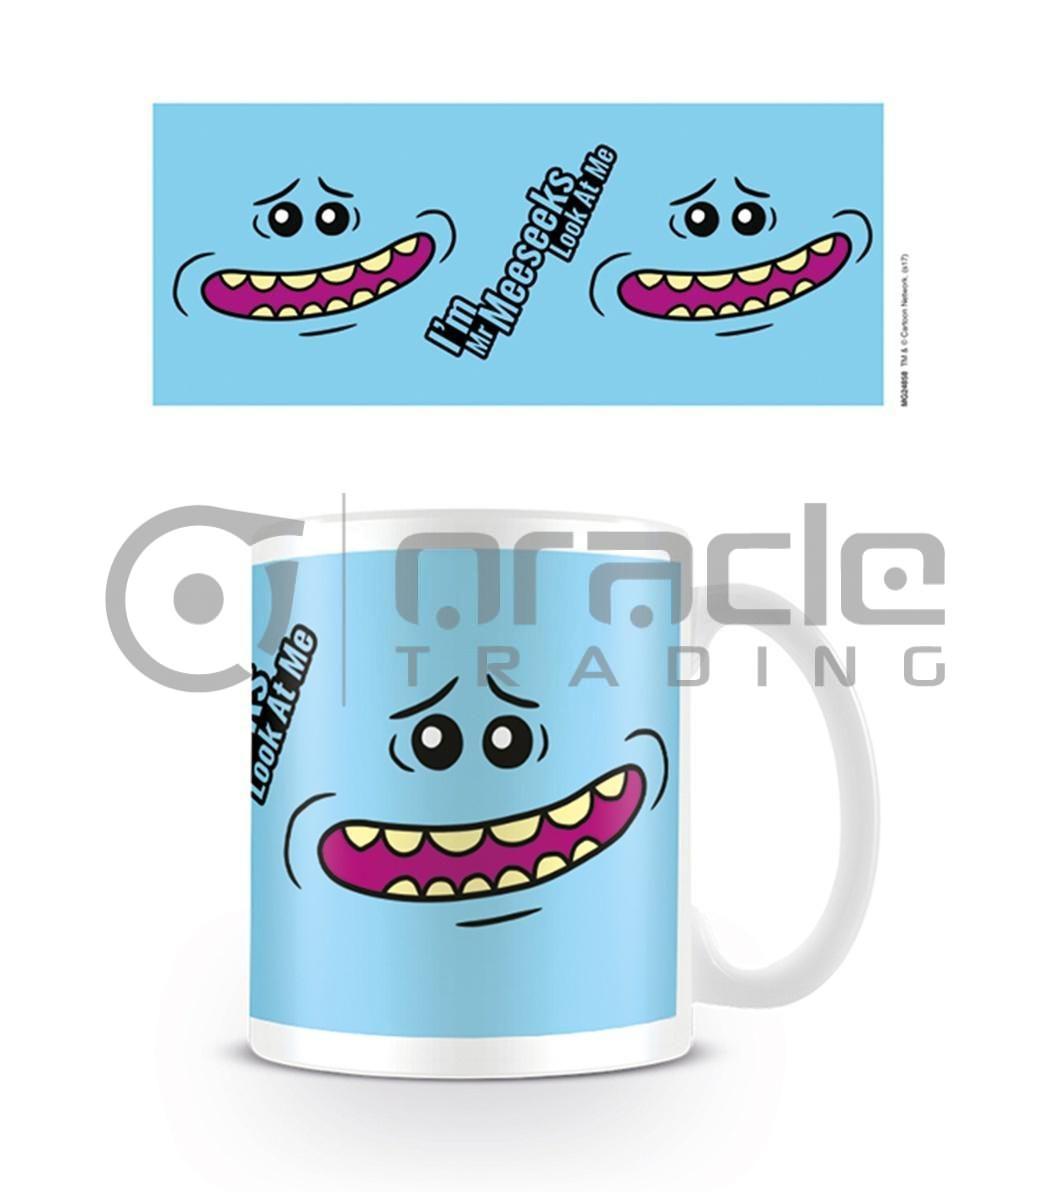 Rick & Morty Mug - Mr. Meeseeks Face